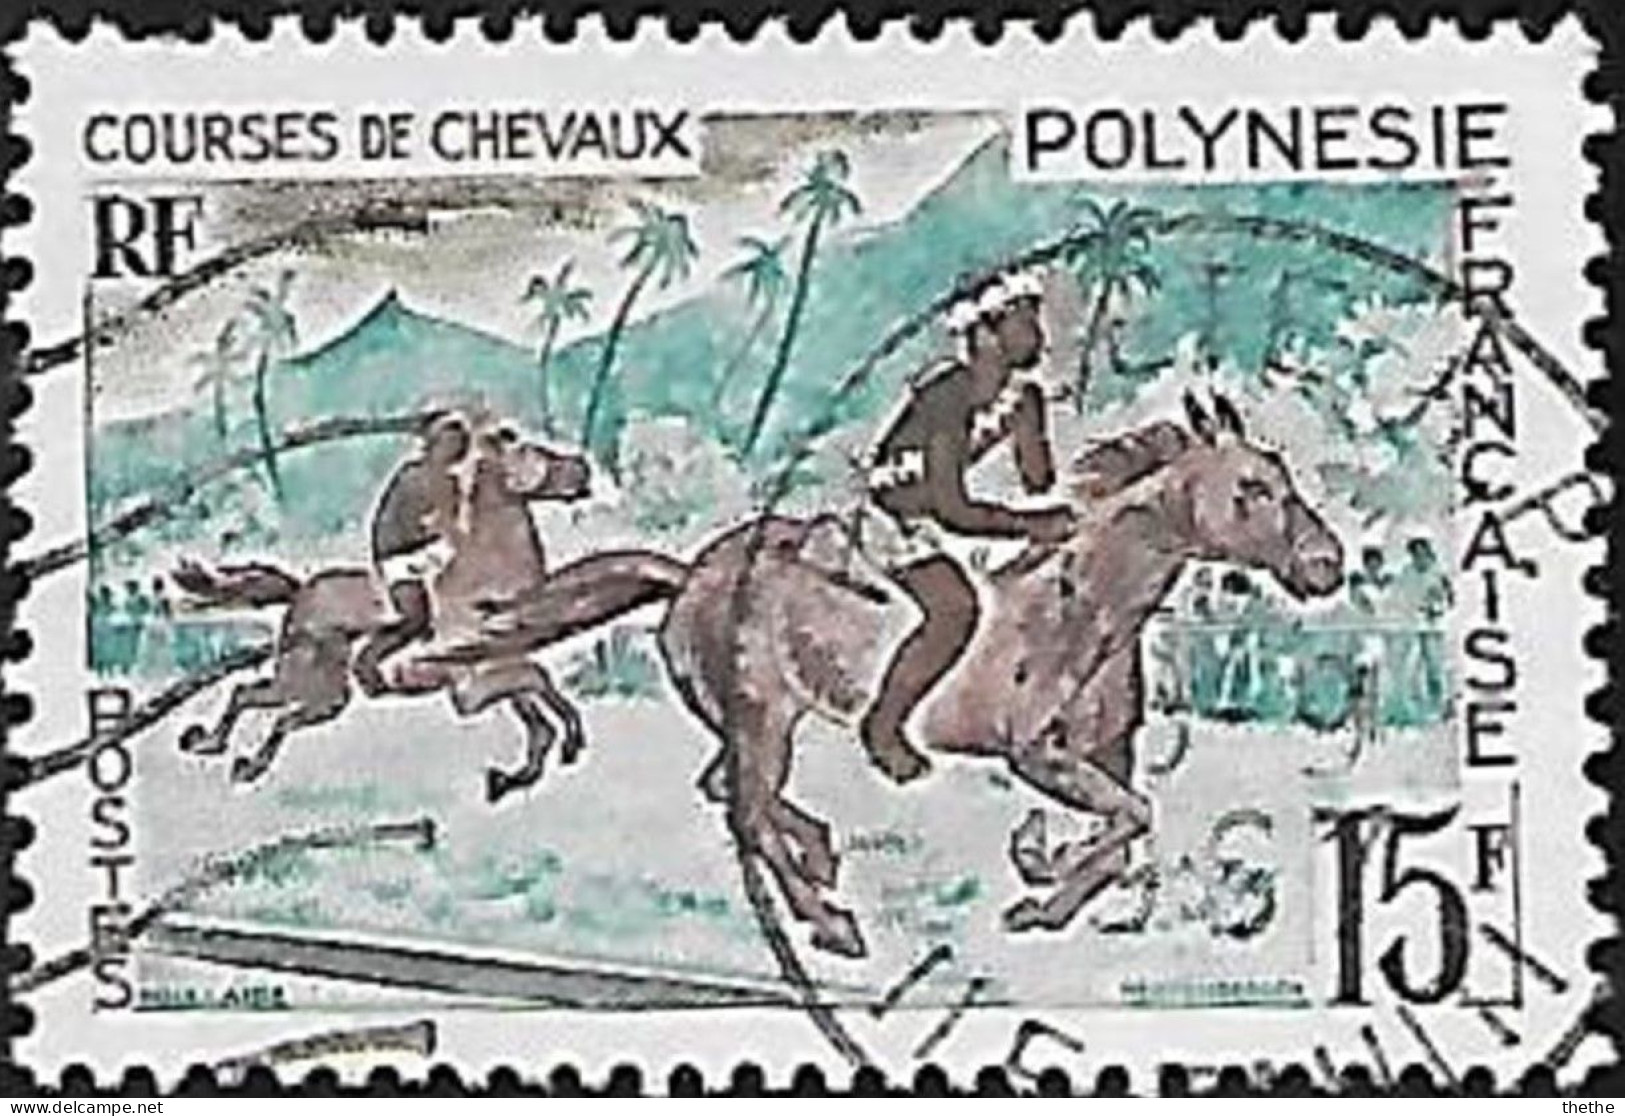 POLYNESIE - Courses De Chevaux - Gebraucht